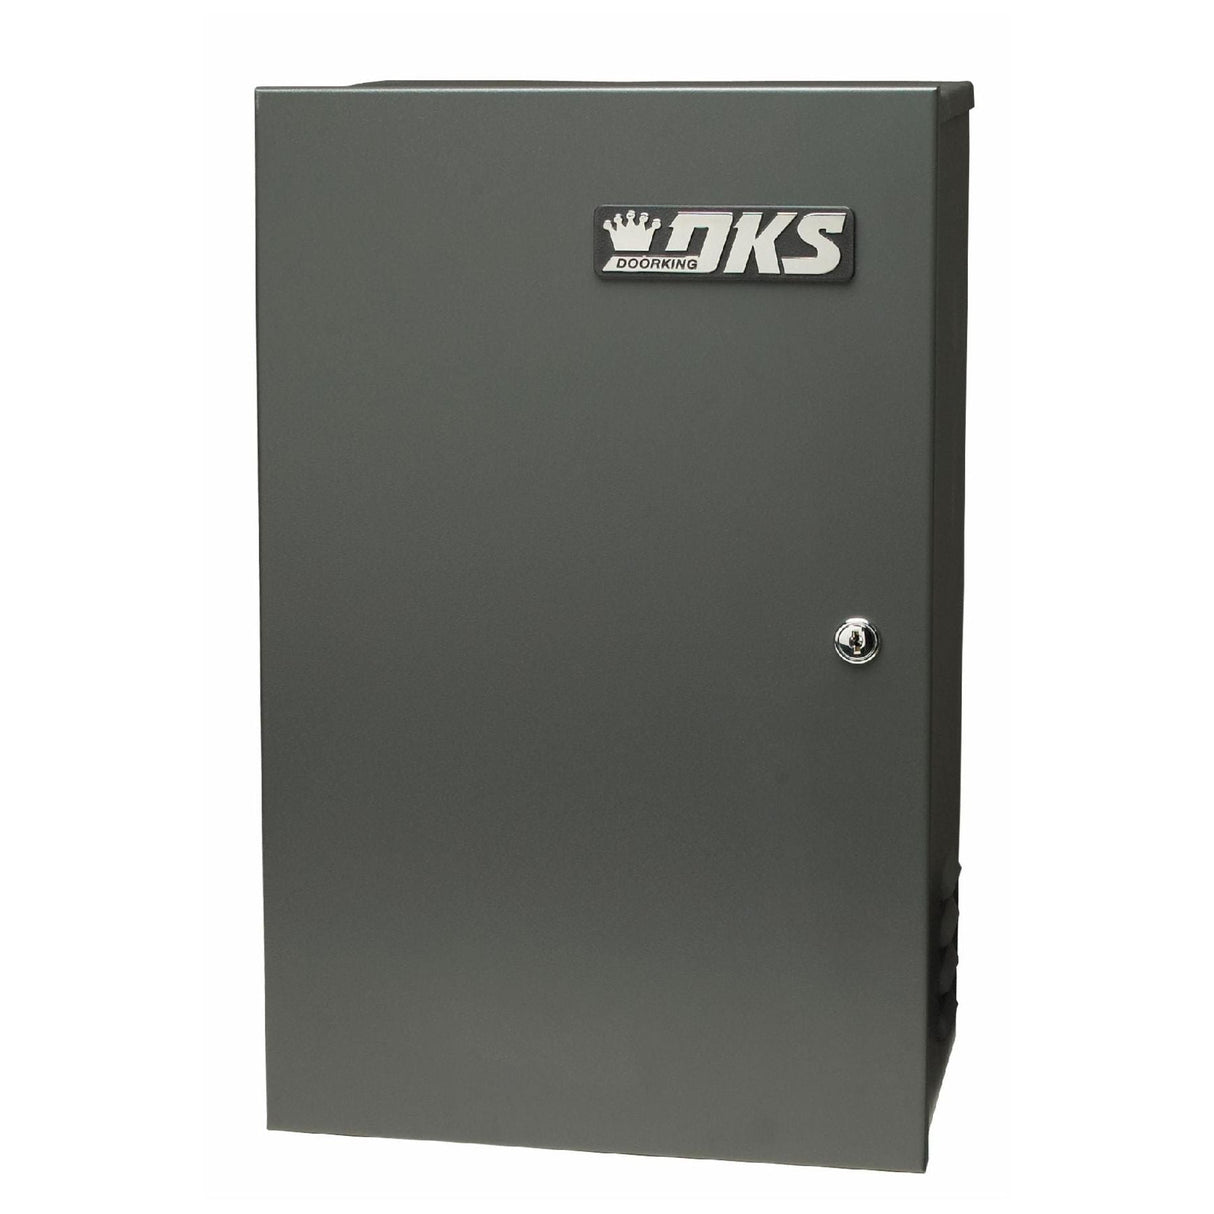 Doorking 4302-314 Solar Control Box